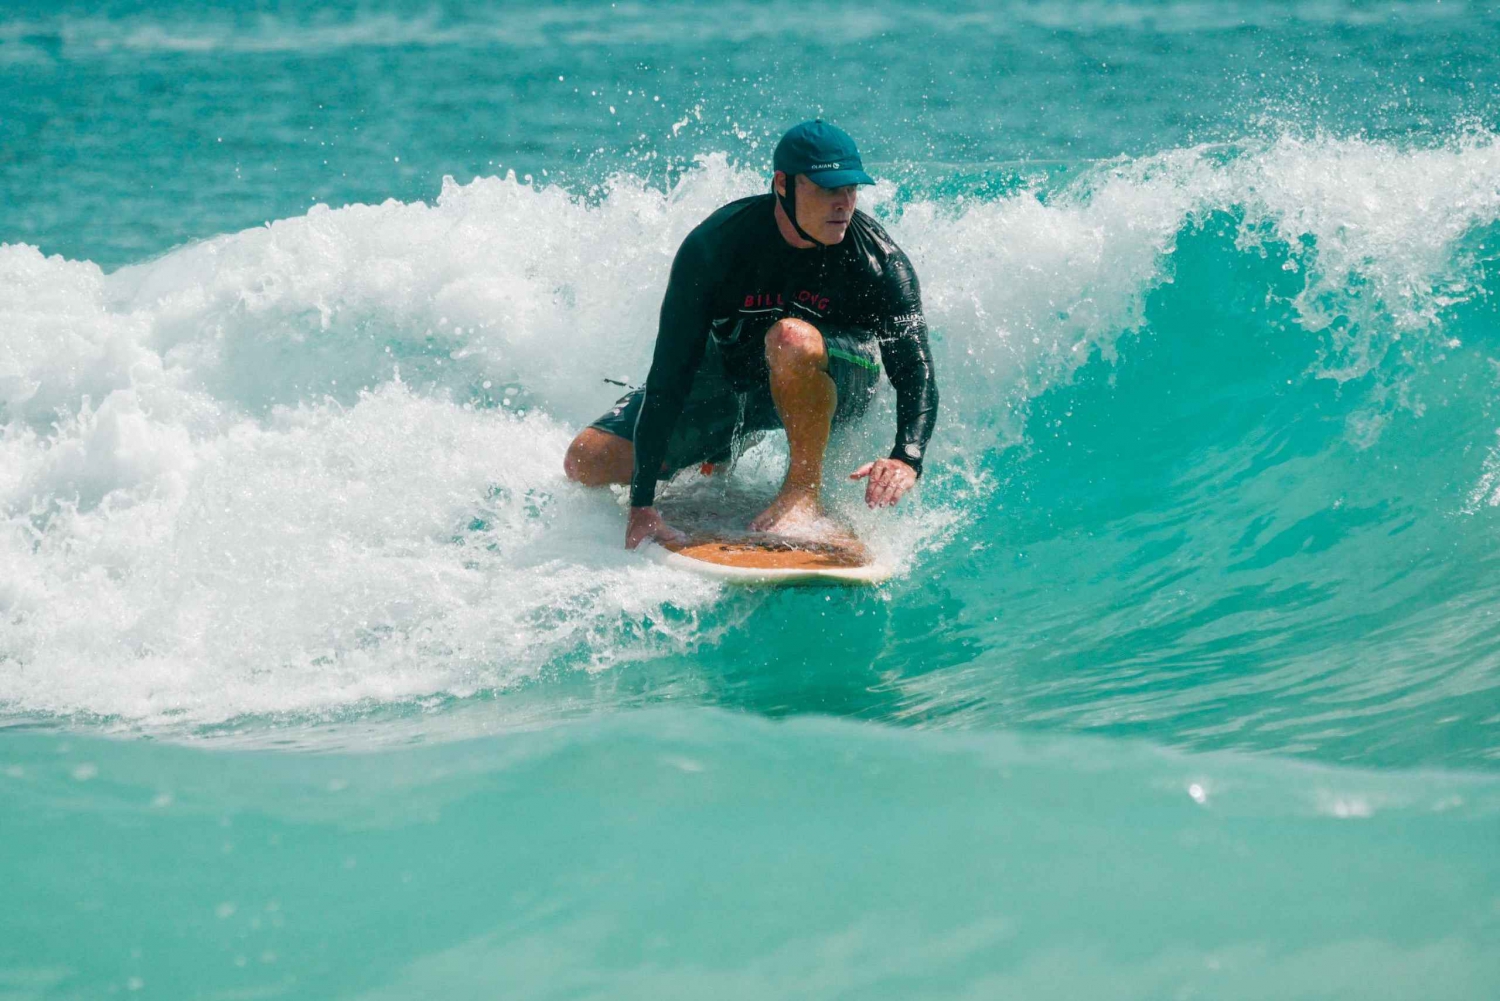 Luksus Surf Retreat i Thailand - 3 dager og 2 netter i Phuket